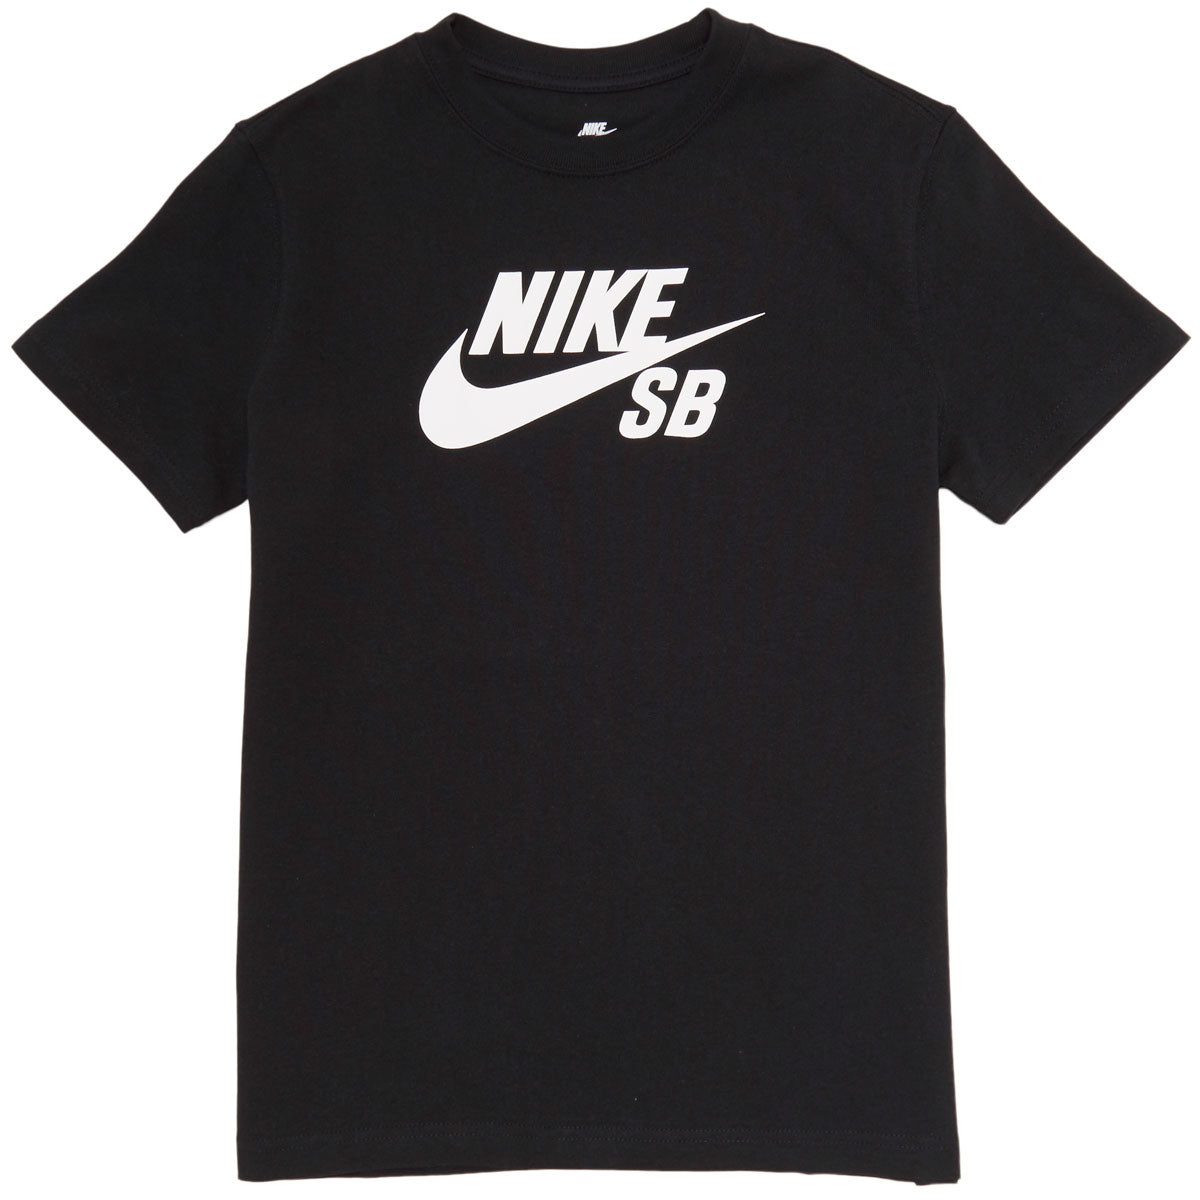 Nike SB Youth Icon T-Shirt - Black image 1